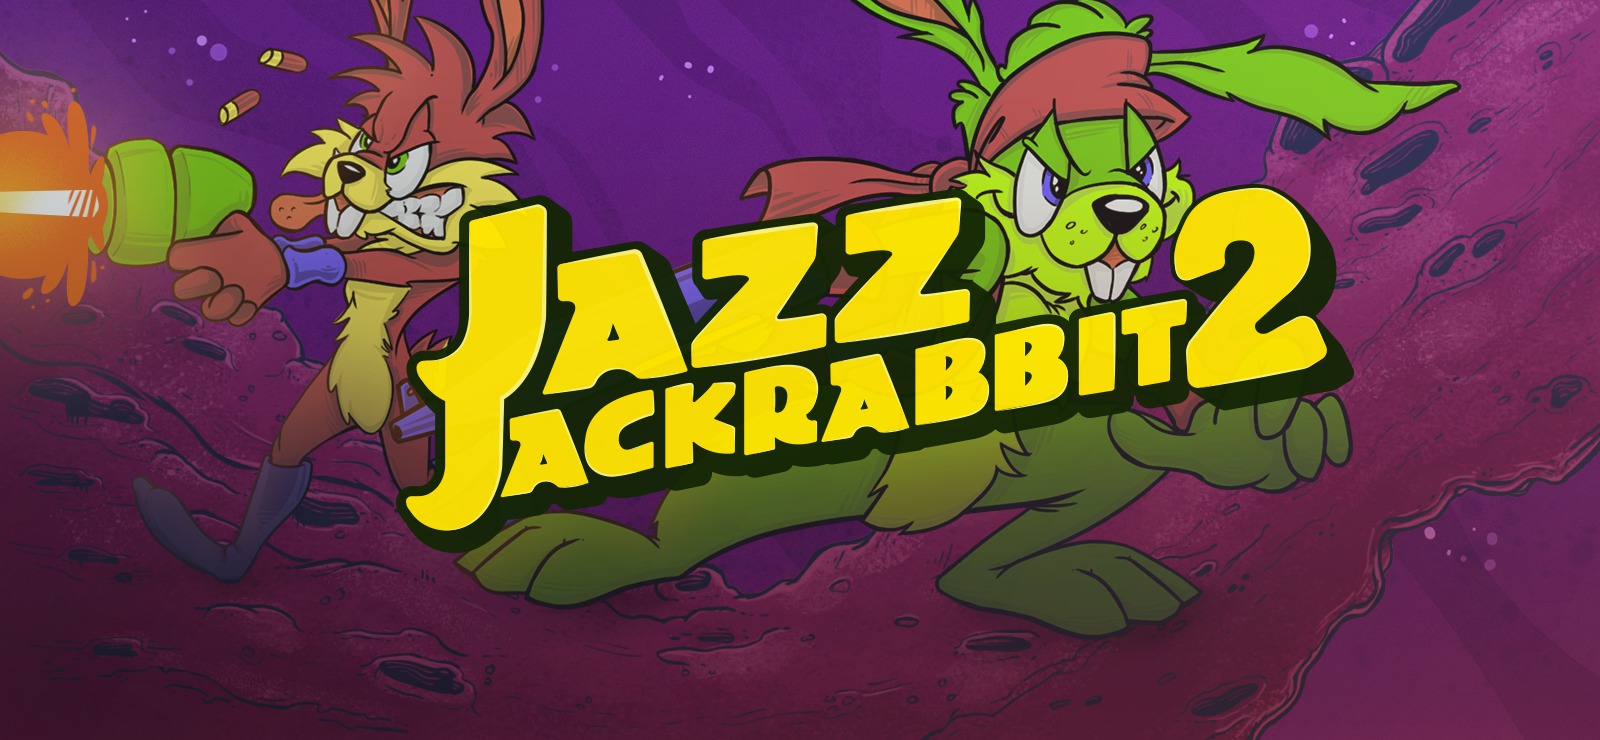 تحميل لعبة jazz jackrabbit 2 للاندرويد مجانا